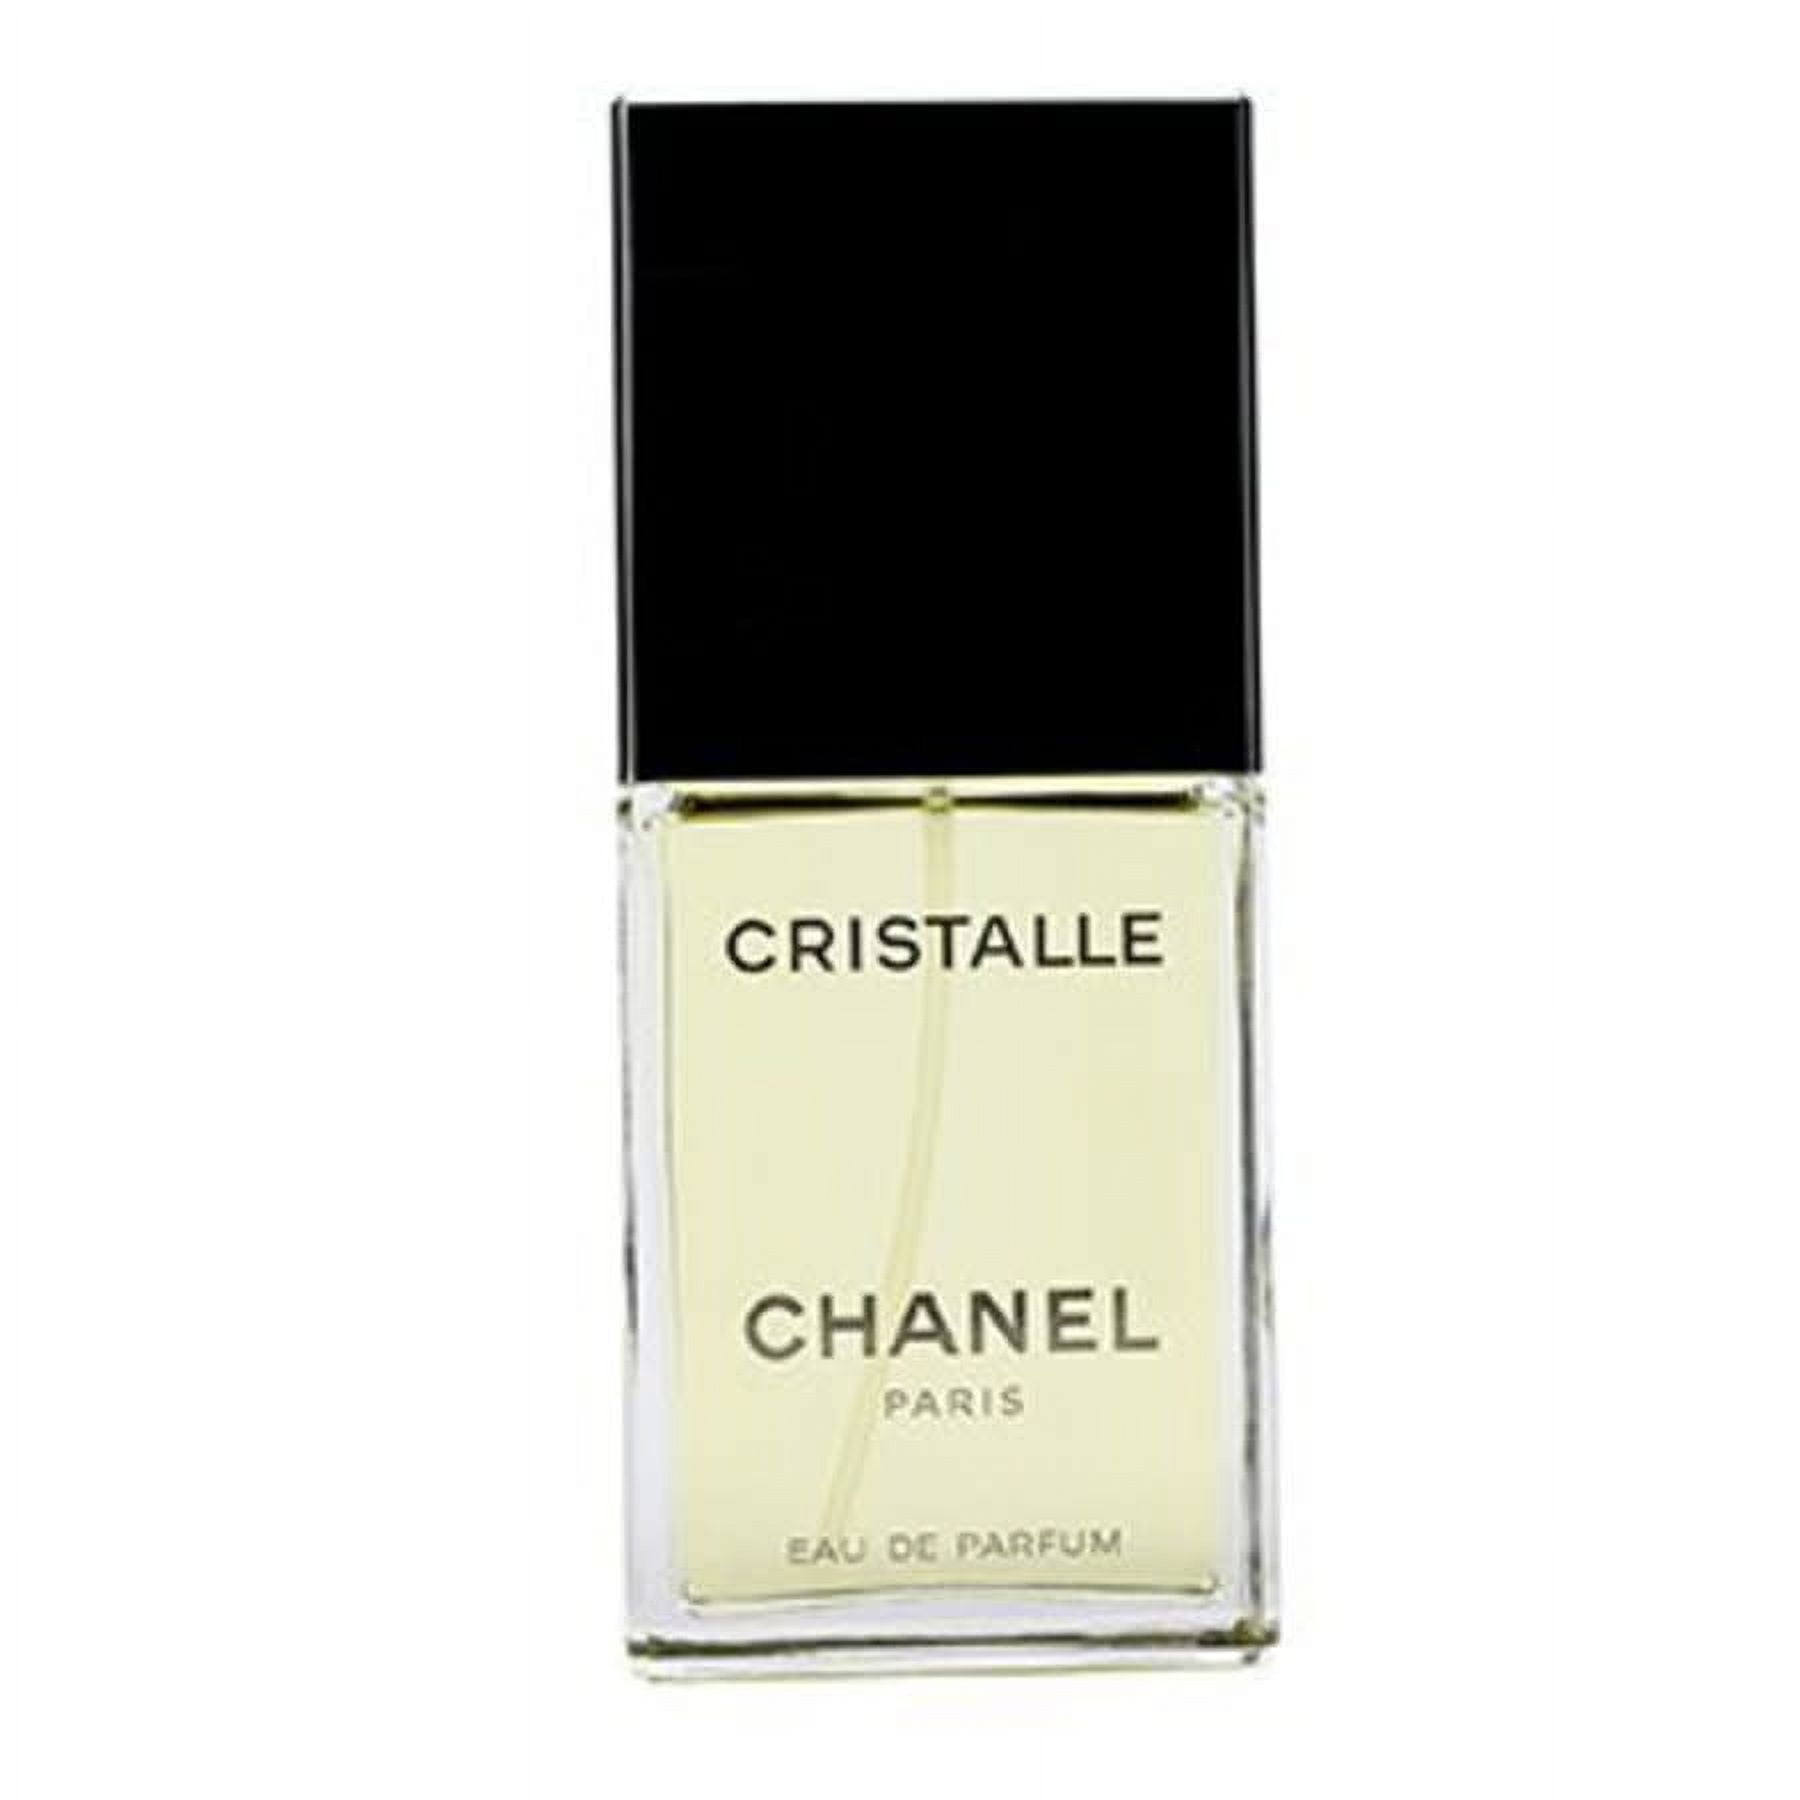  Chanel Cristalle Eau Verte Eau de Toilette Spray, 1.7